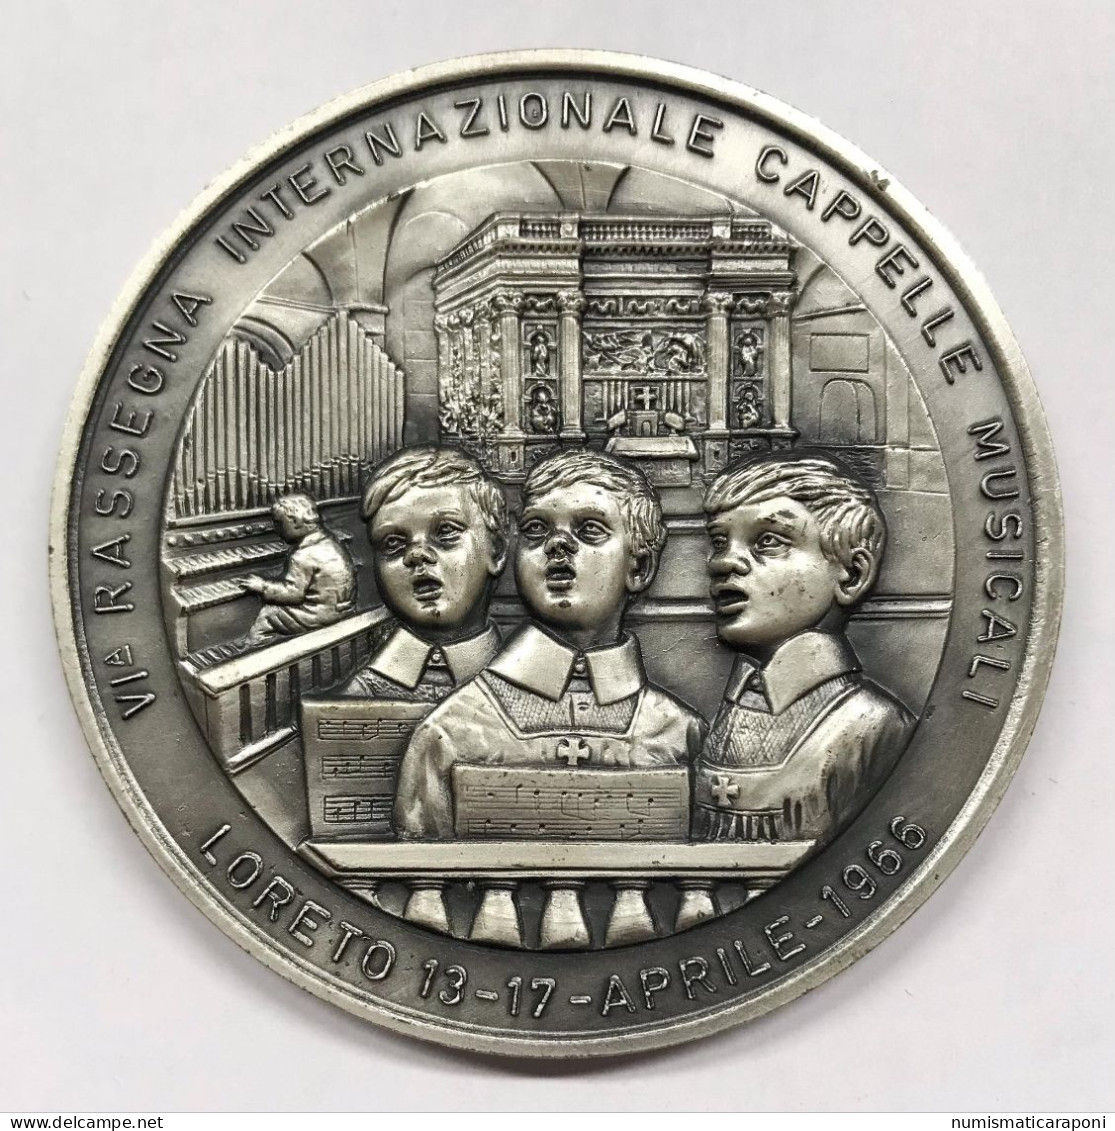 Medaglia Rassegna Internazionale Cappelle Musicali Loreto 1966 59 Mm - Professionali/Di Società